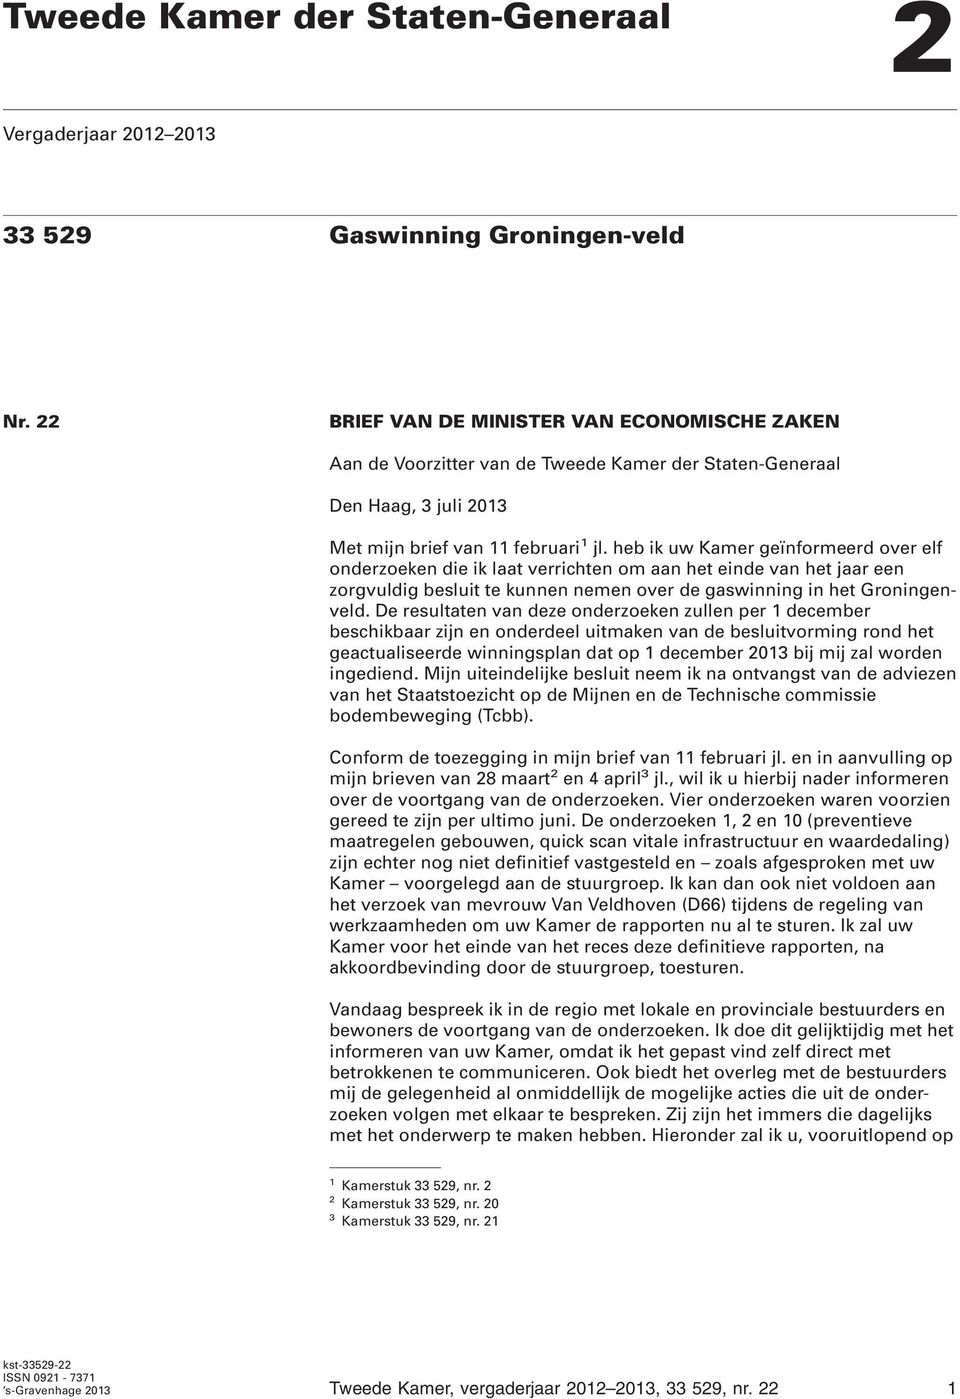 heb ik uw Kamer geïnformeerd over elf onderzoeken die ik laat verrichten om aan het einde van het jaar een zorgvuldig besluit te kunnen nemen over de gaswinning in het Groningenveld.